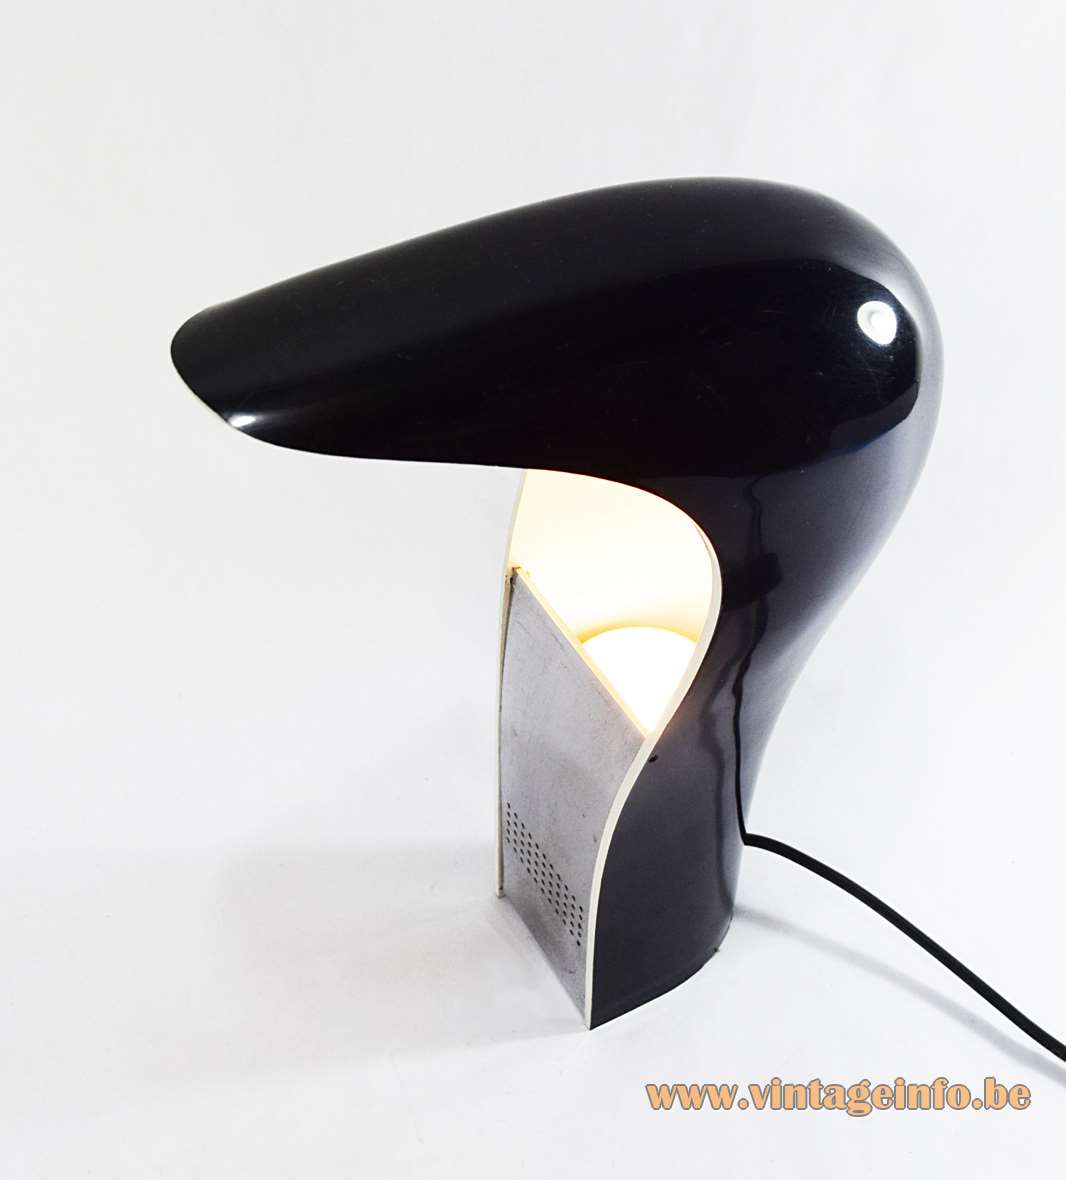 Lamperti Pelota desk lamp curved black plastic lampshade design: Cesare Casati & Carlo Ponzio 1960s 1970s Italy